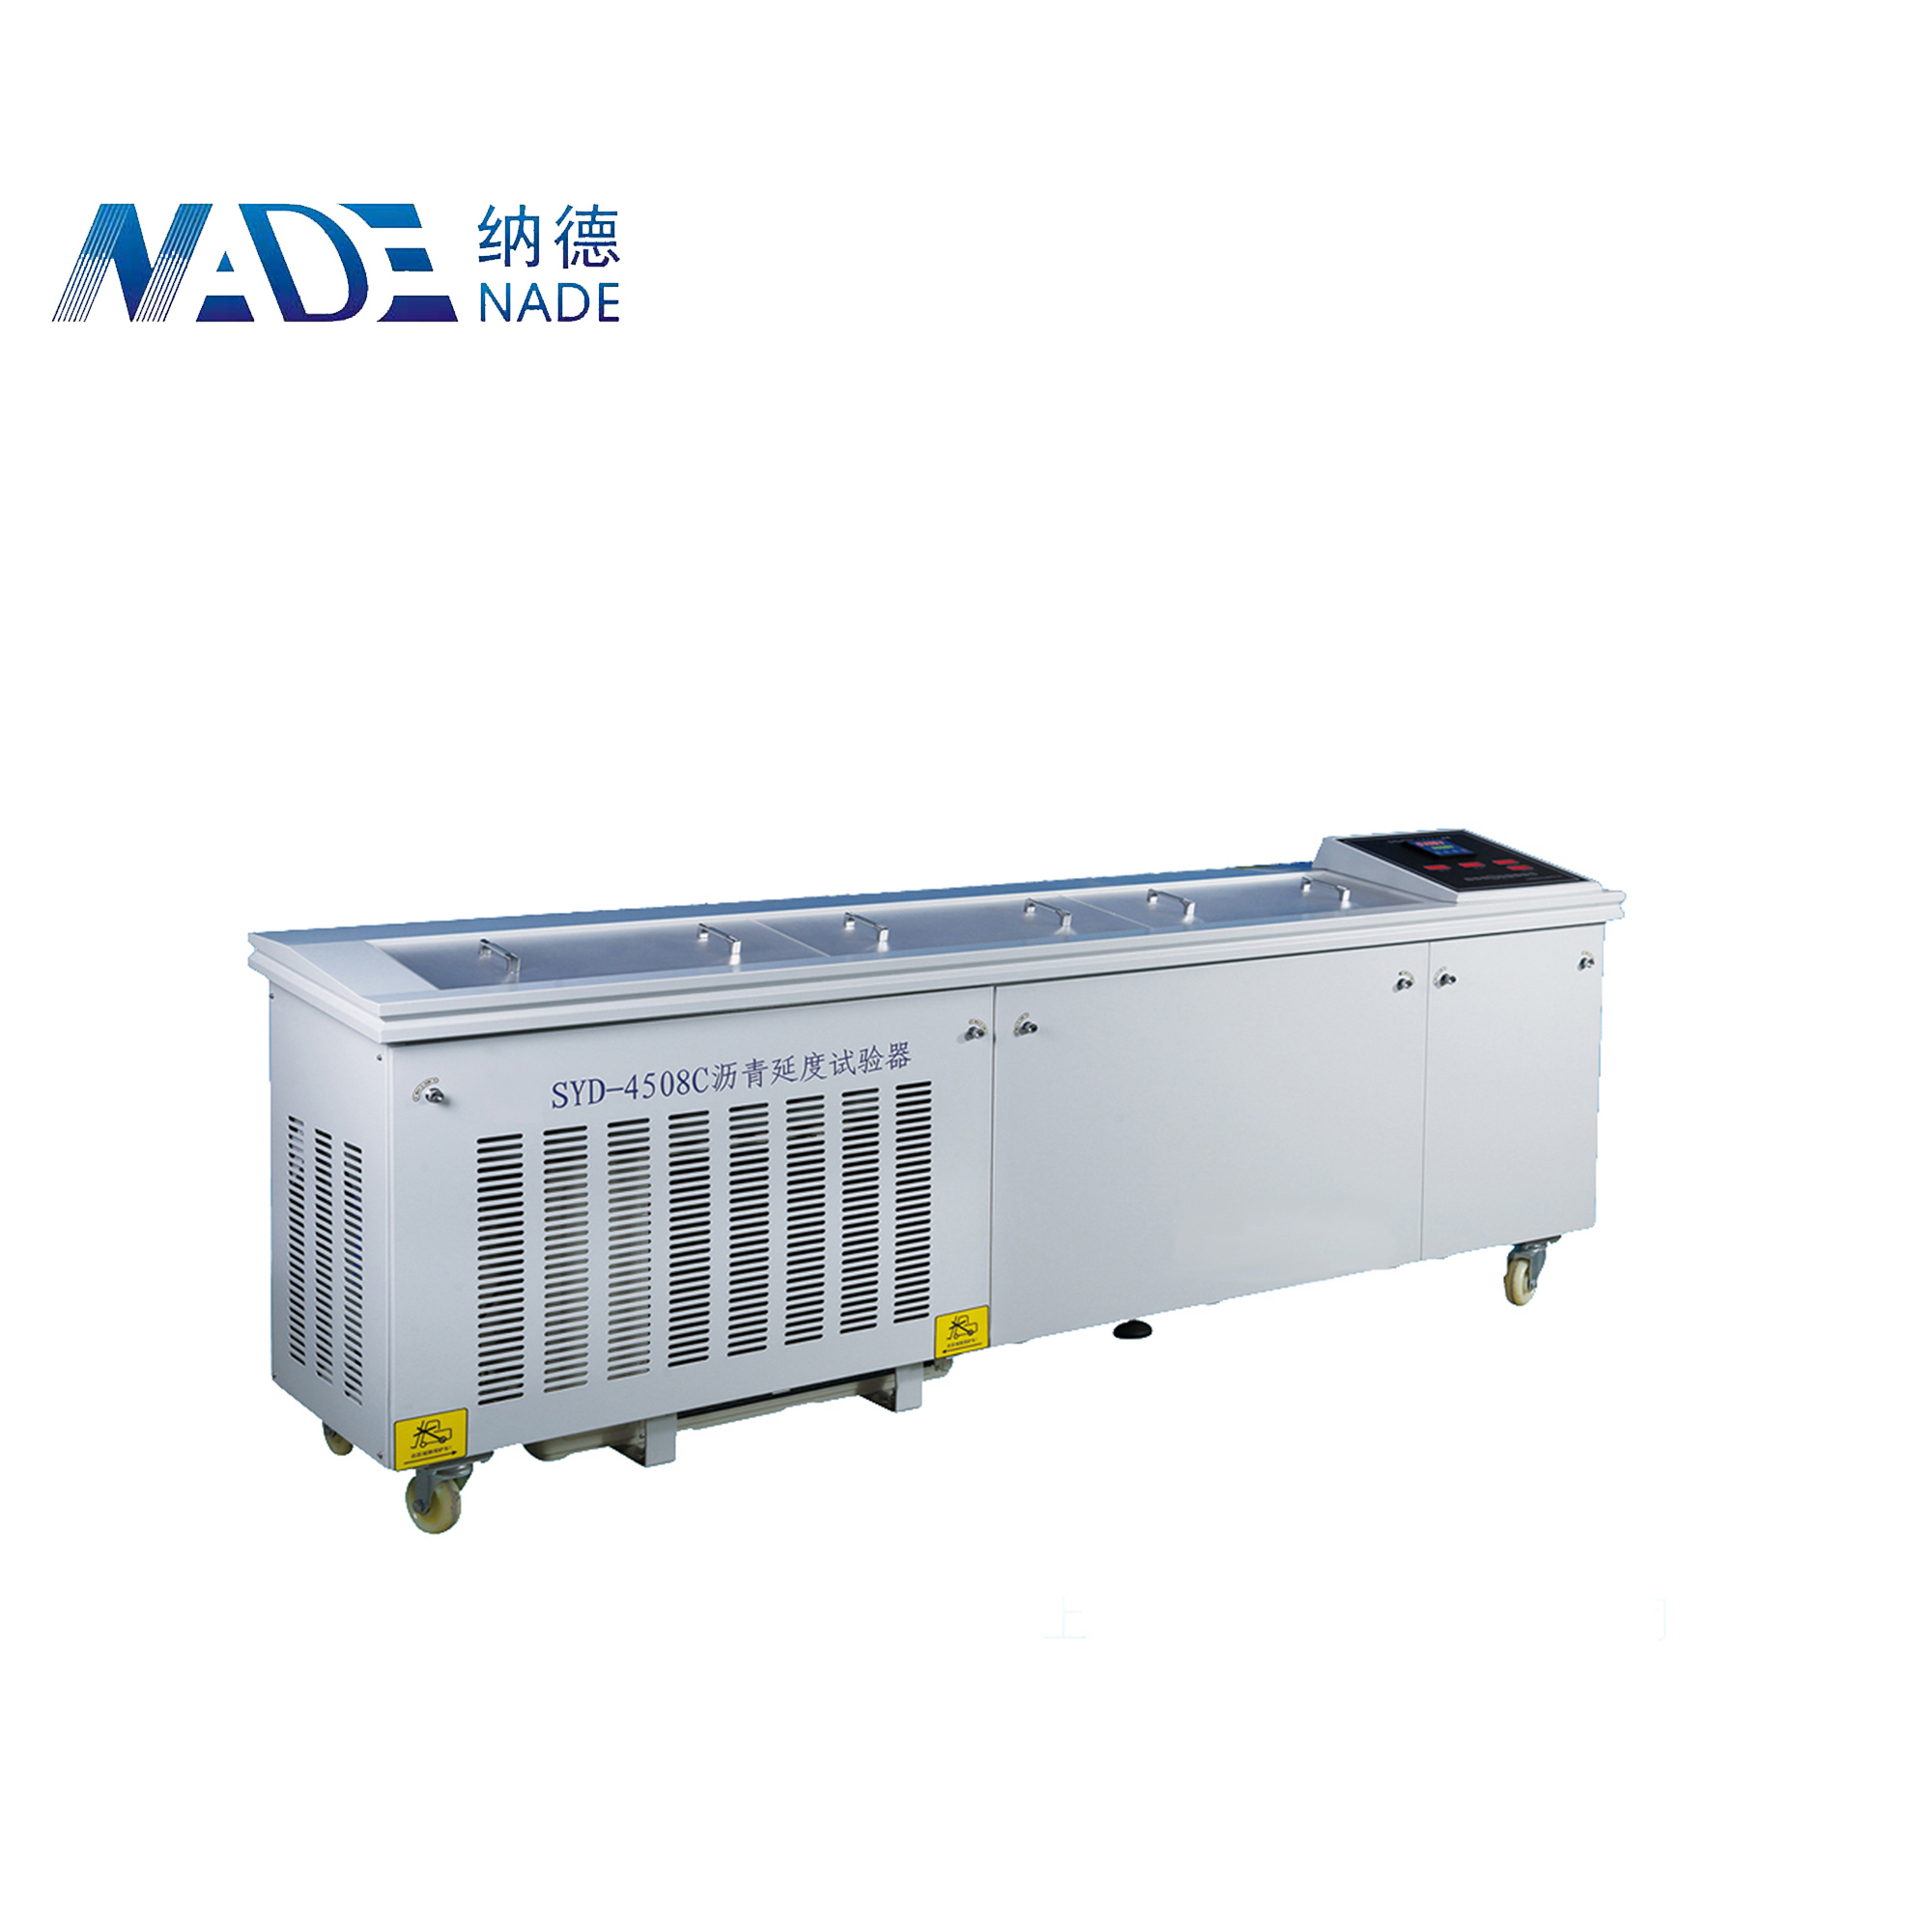 NADE SYD-4508C Laboratory Automatic Asphalt/Bitumen Ductility Testing Machine (Measurement distance 1.5m)